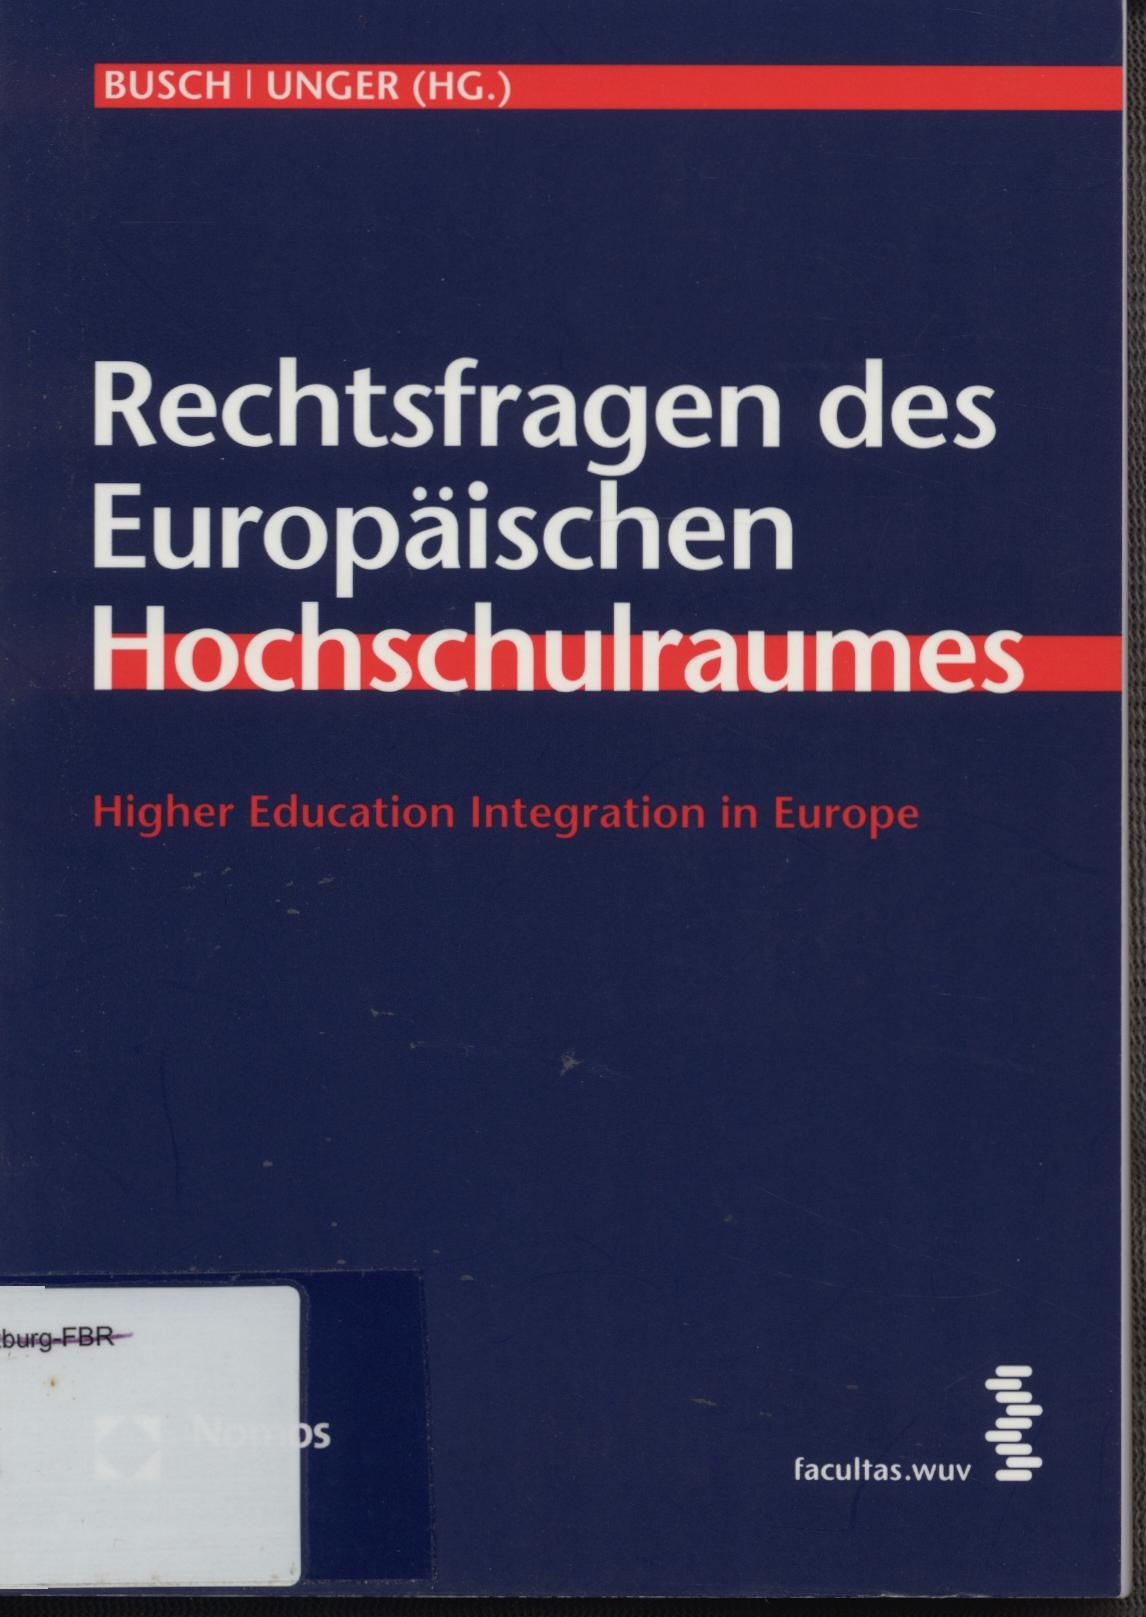 Rechtsfragen des Europäischen Hochschulraumes. Higher Education Integration in Europe. - Busch, Jürgen und Hedwig Unger